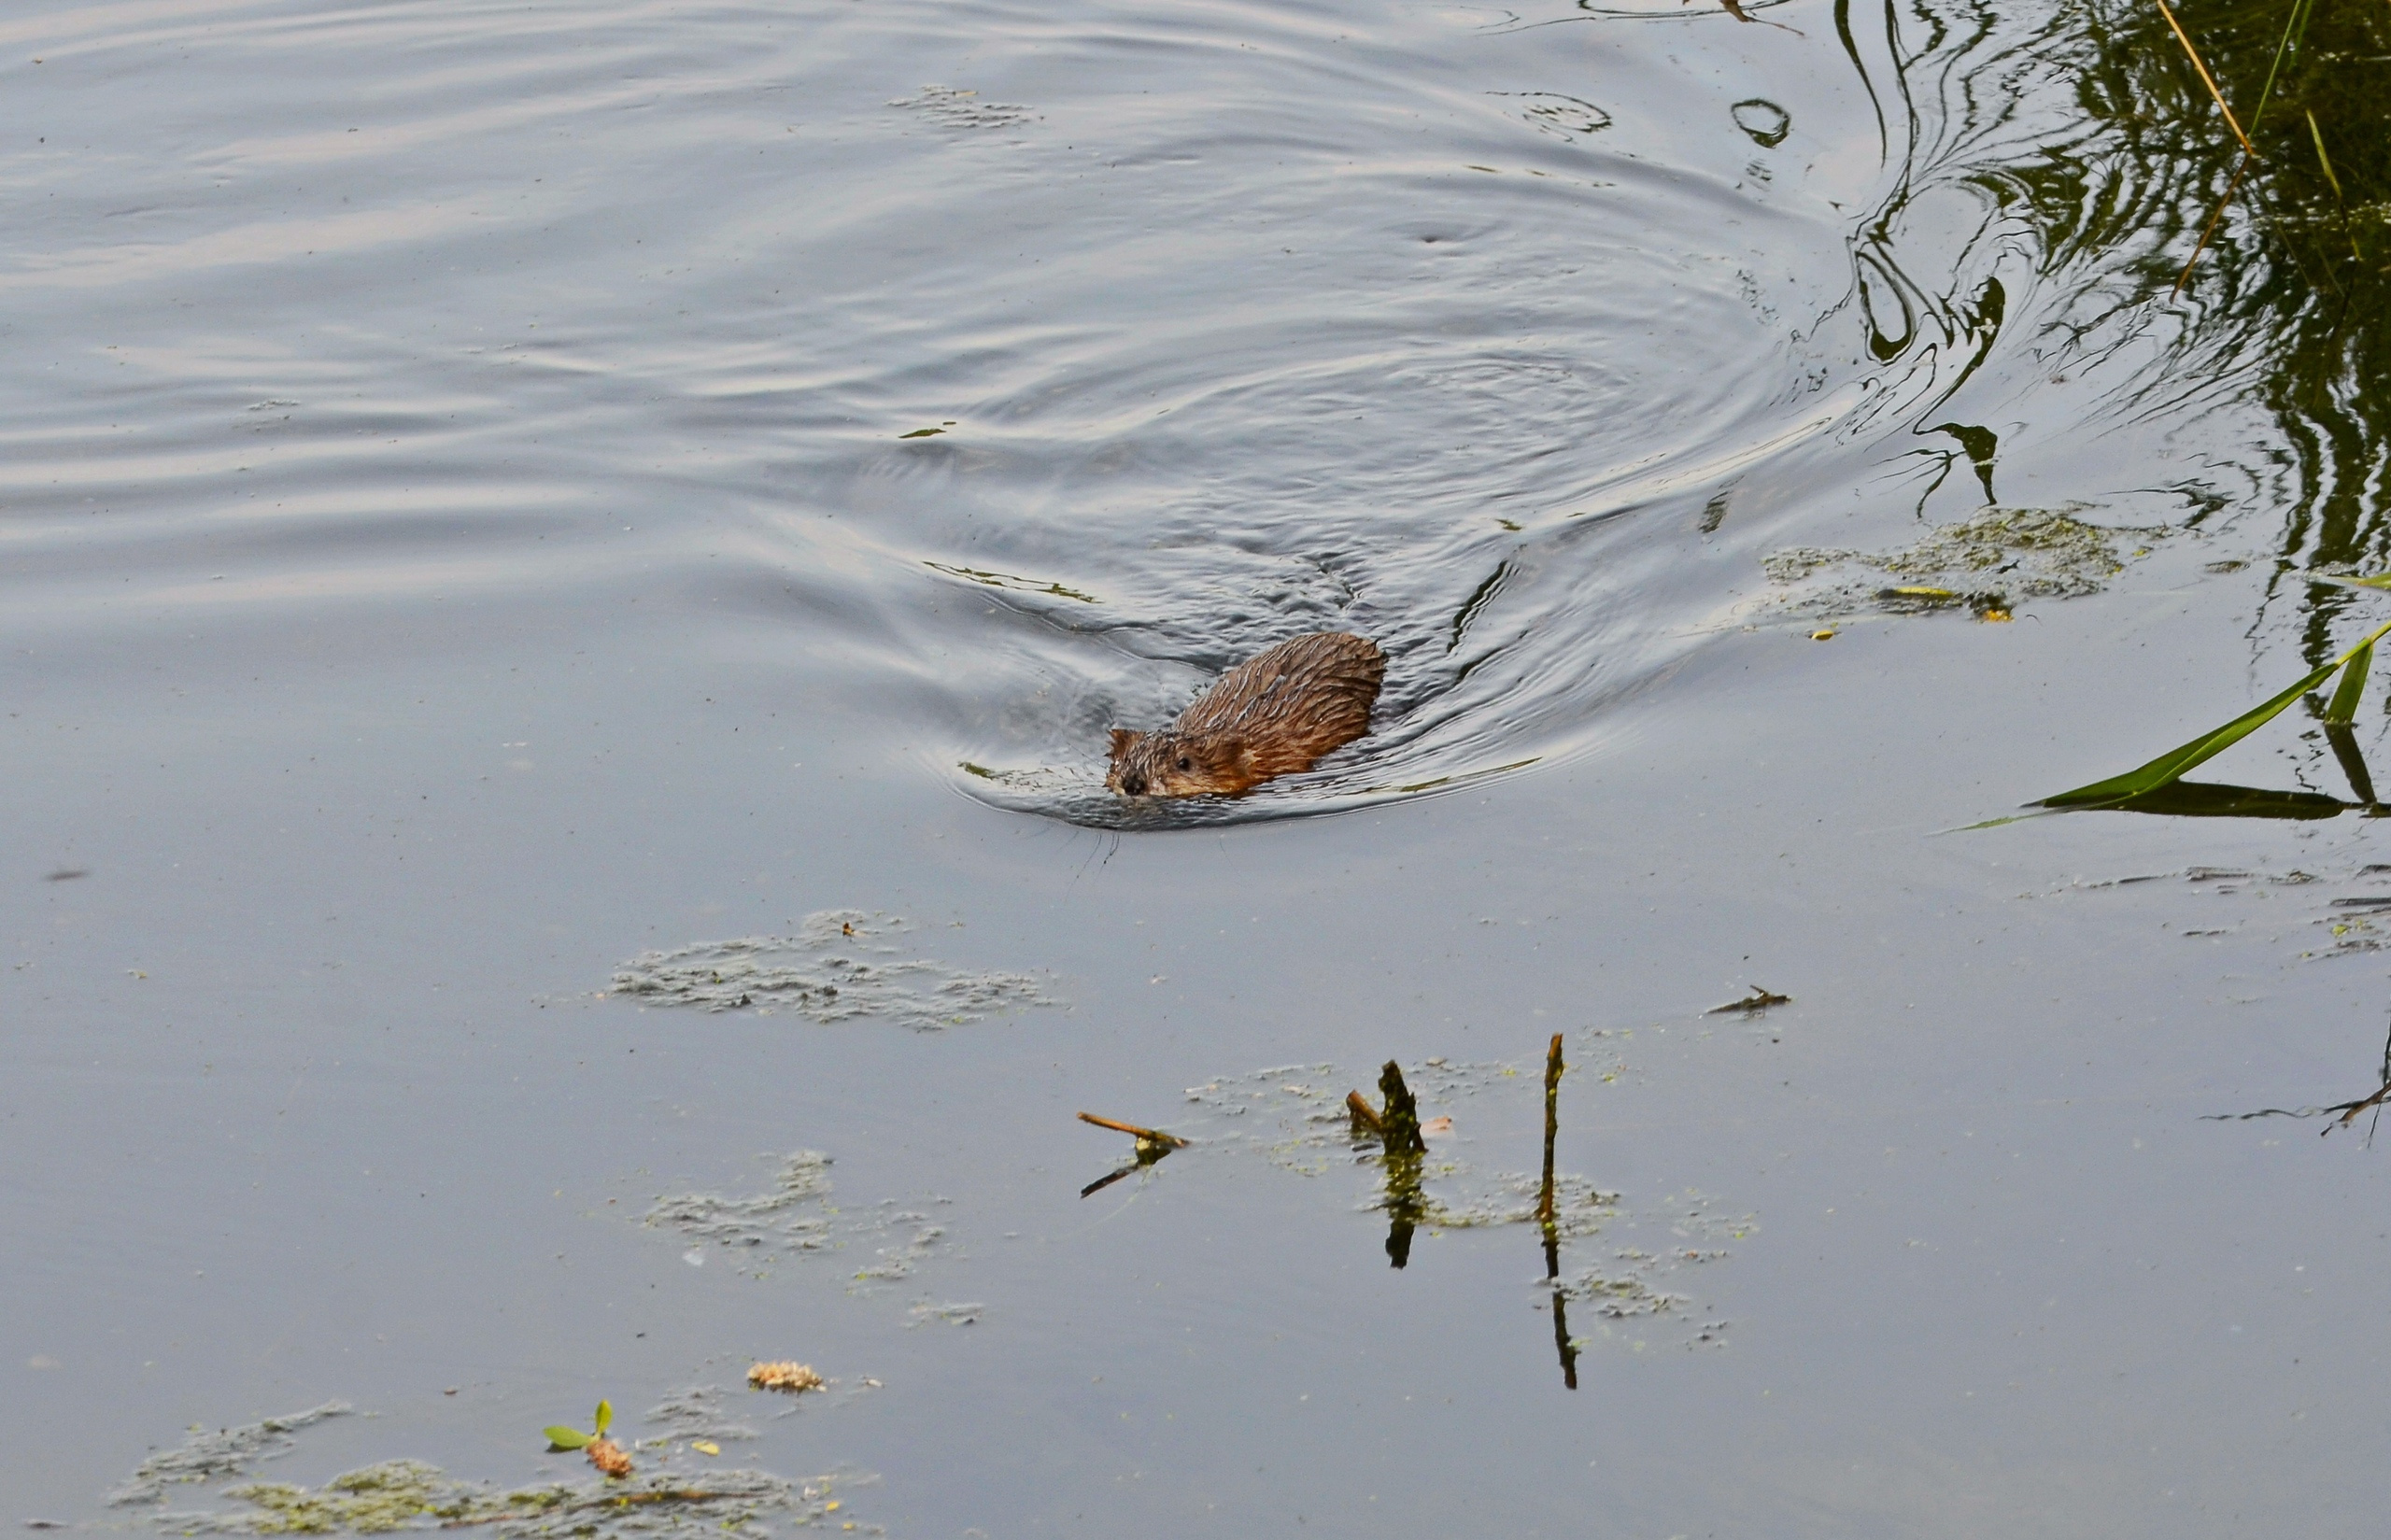 Эту ондатру тюменец обнаружил в районе улицы Народной (Восточный микрорайон), она живет в канаве вместе с утками<br><br>